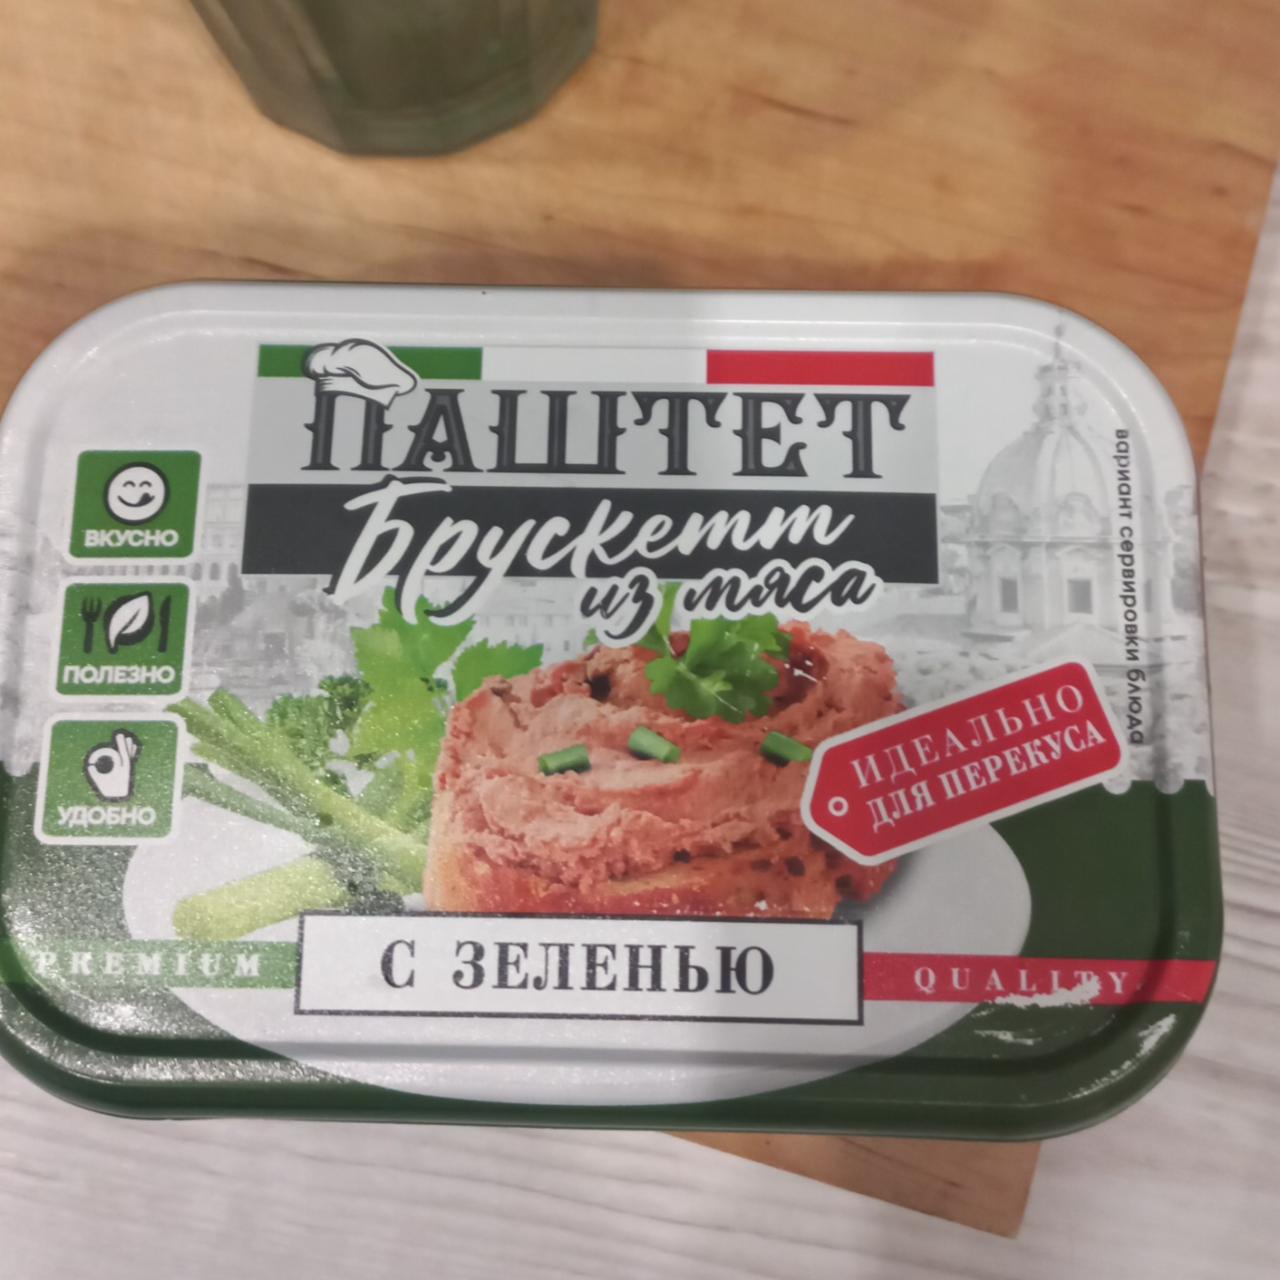 Фото - Паштет Брускетт из мяса с зеленью Борисовский мясокомбинат №1